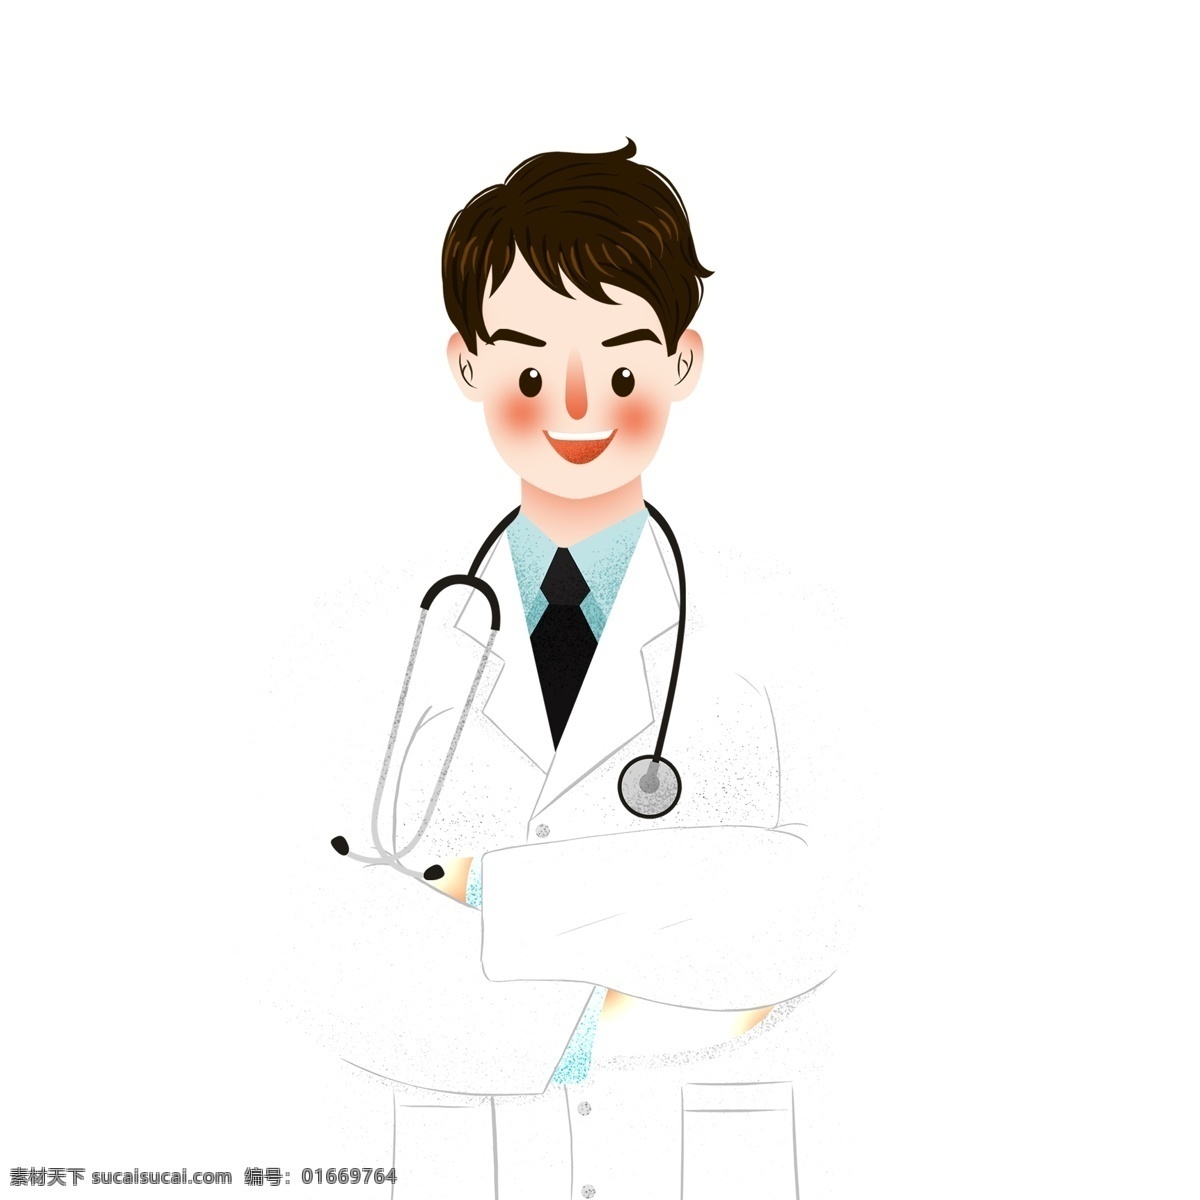 彩绘 卡通 医生 人物 图案 卡通人物 职业 卡通医生 男医生 元素设计 创意元素 手绘元素 免抠元素